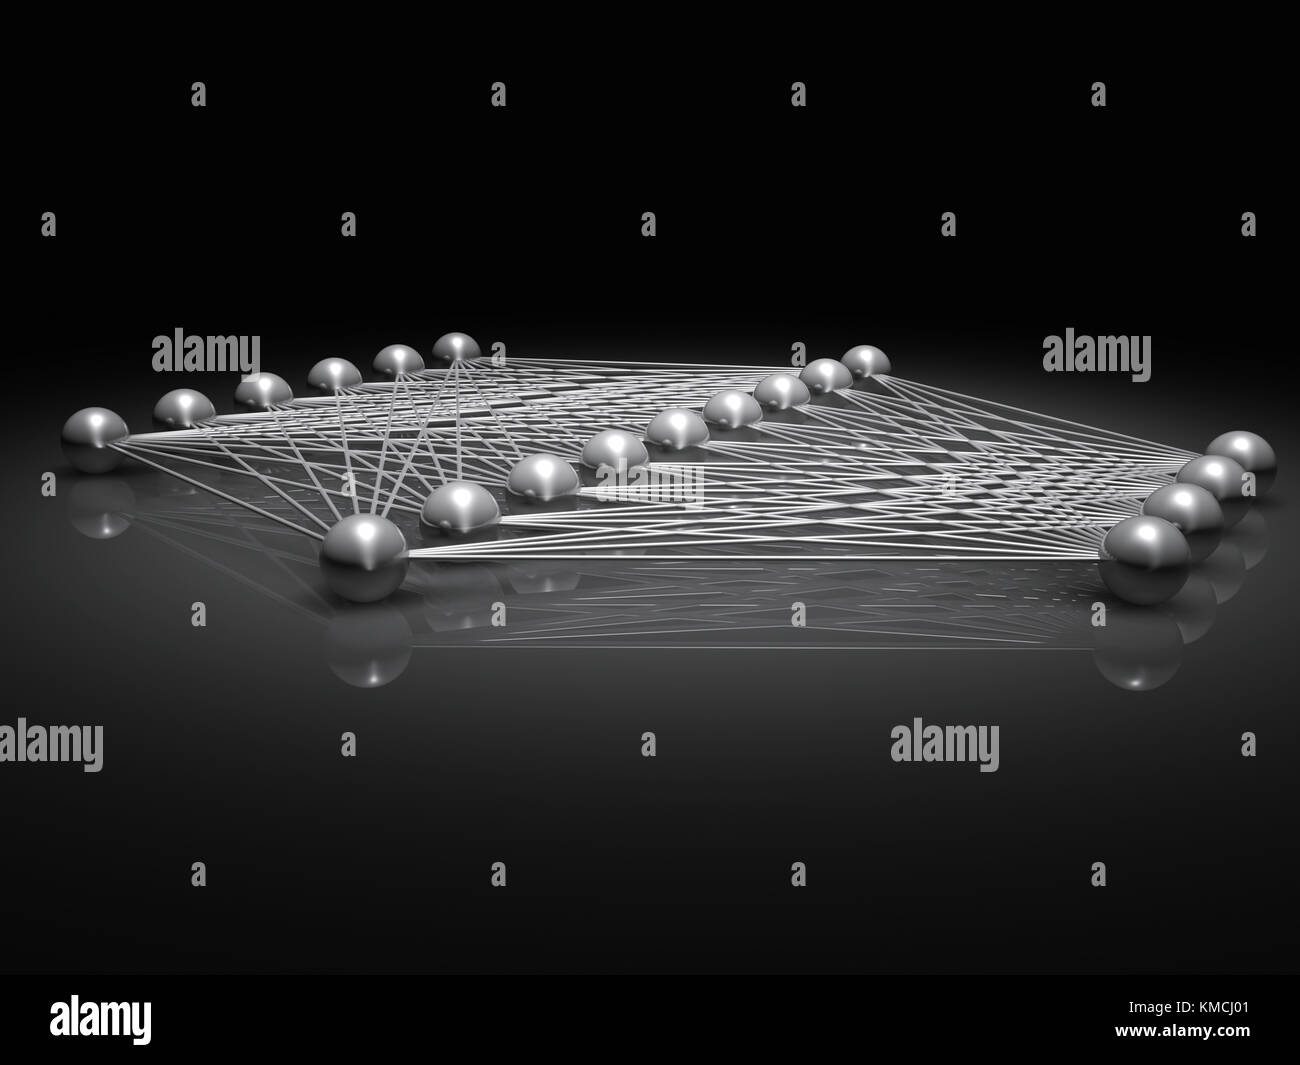 Künstliche flachen neuronales Netzwerk Struktur, digitale Illustration mit Schaltplan metallische Modell, 3D-Rendering Stockfoto